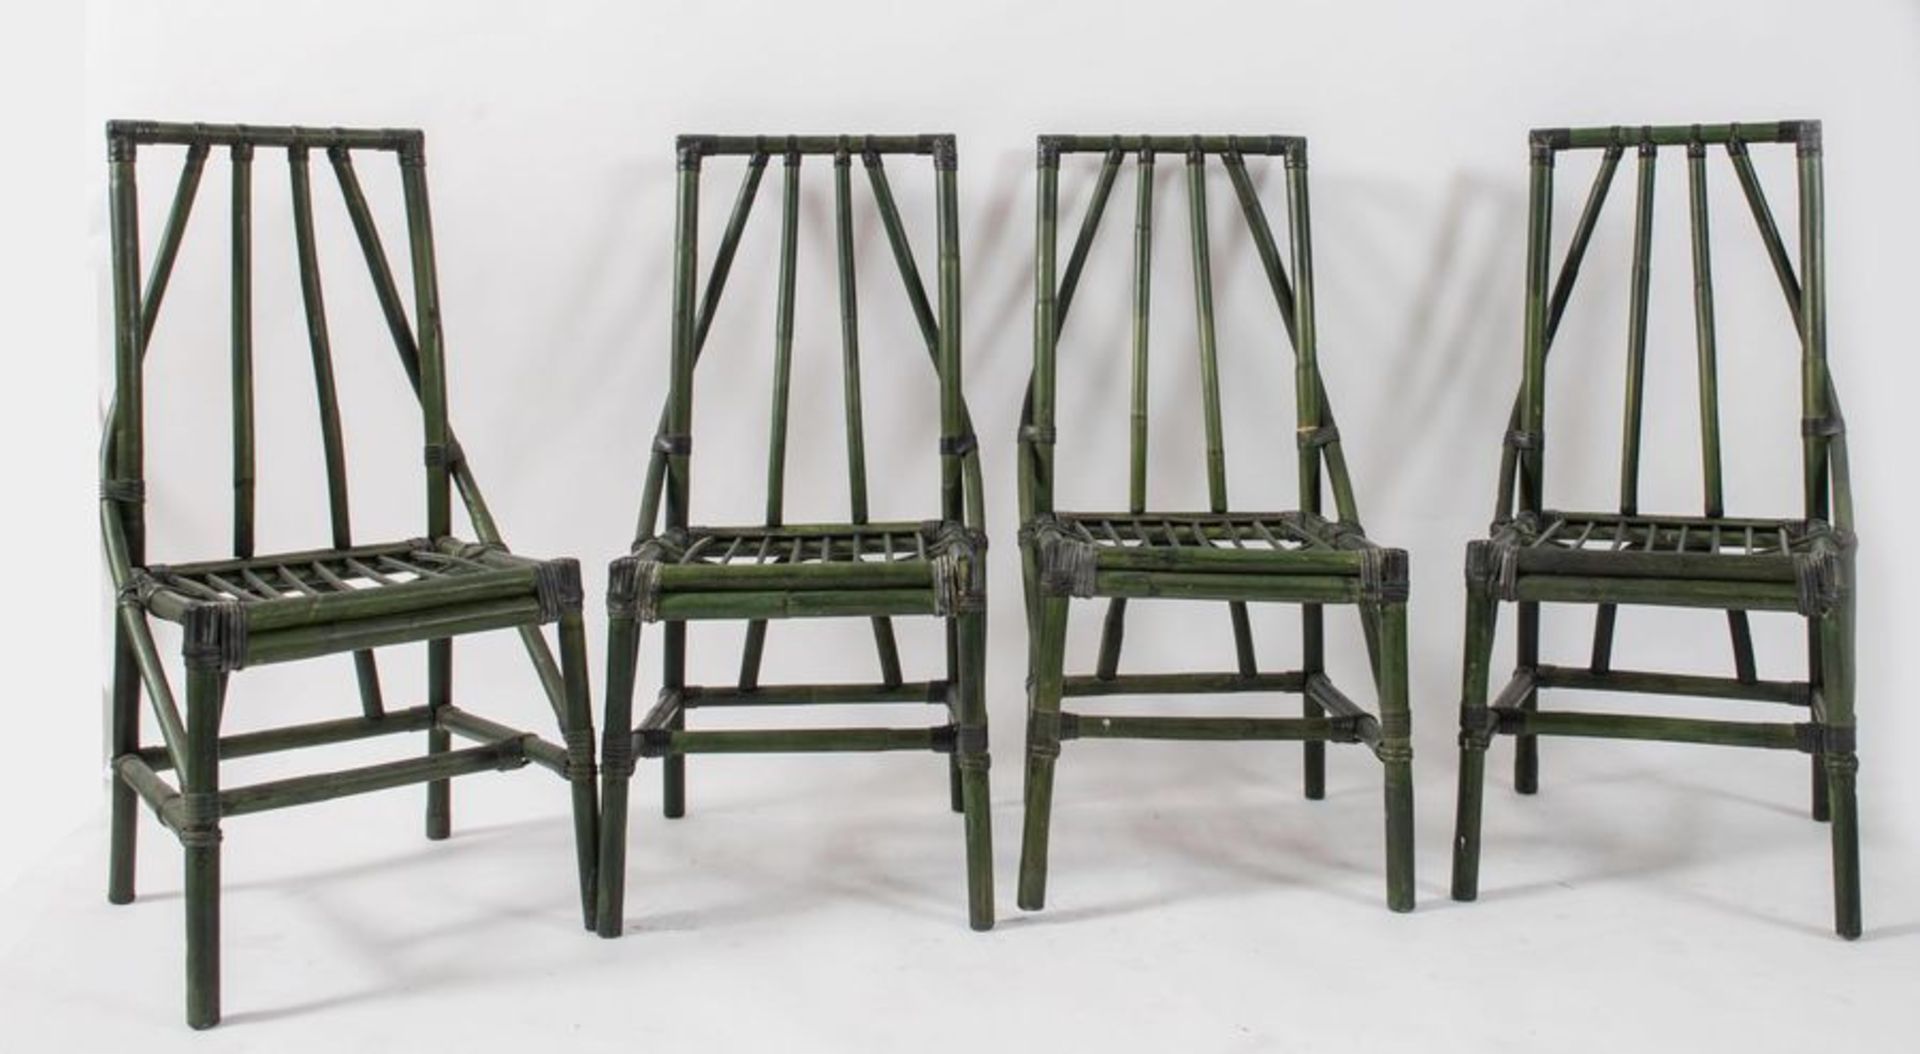 Quattro sedie in bamboo e canna d’india con legature in cuoio. Prod. Italia, 1970 ca. Cadauna di cm